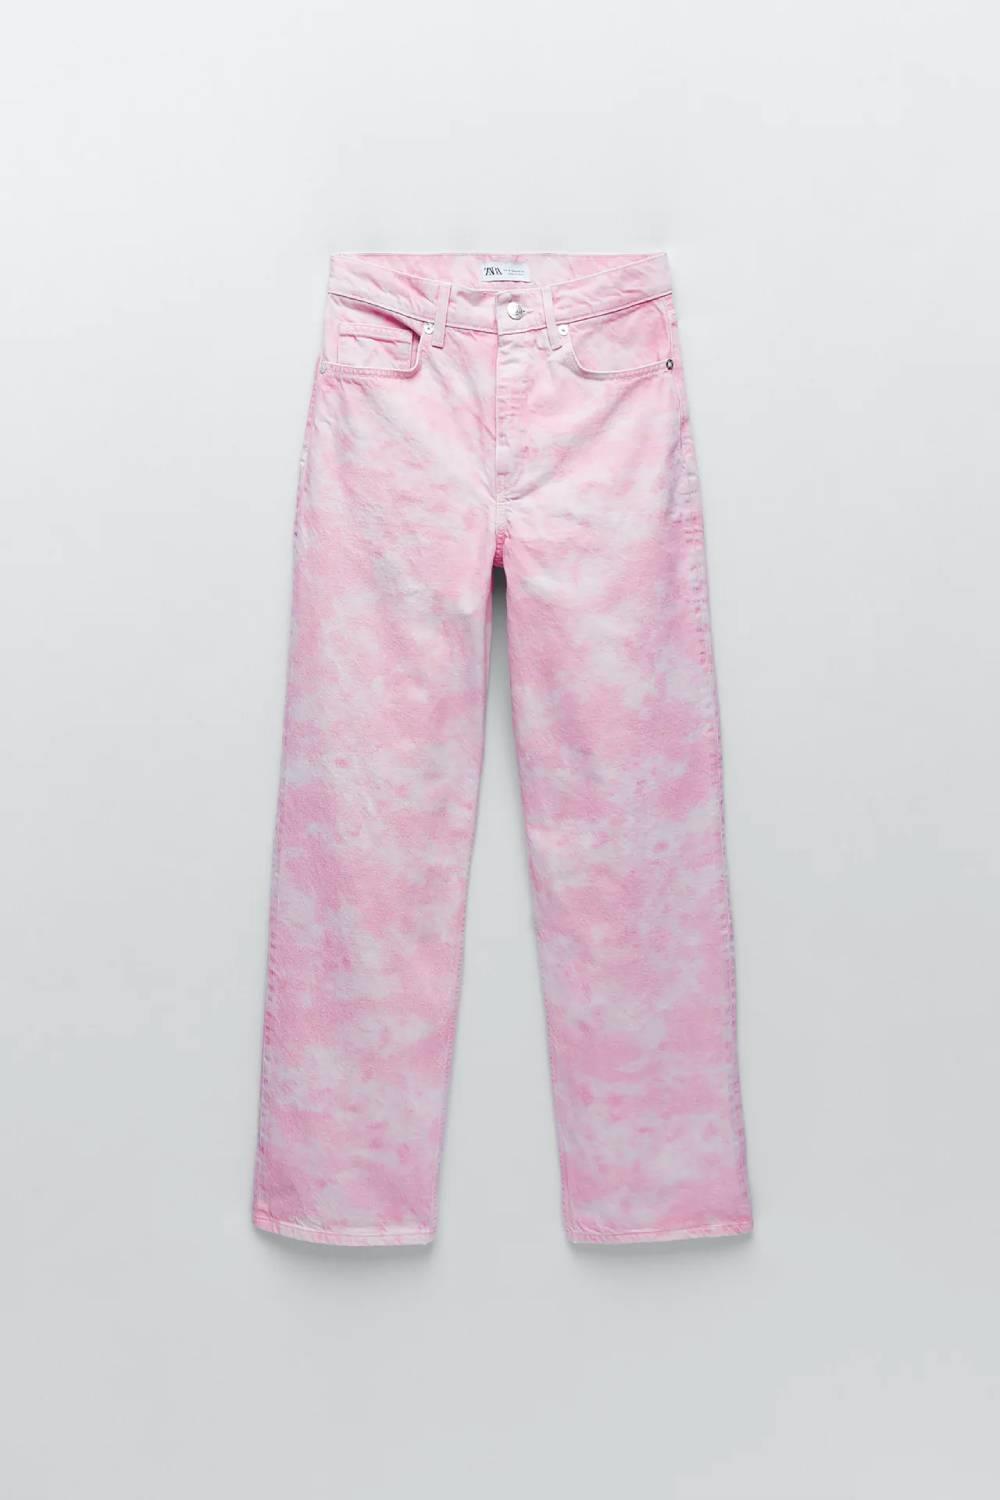 Pantalón 'wide leg' con print rosa, Zara